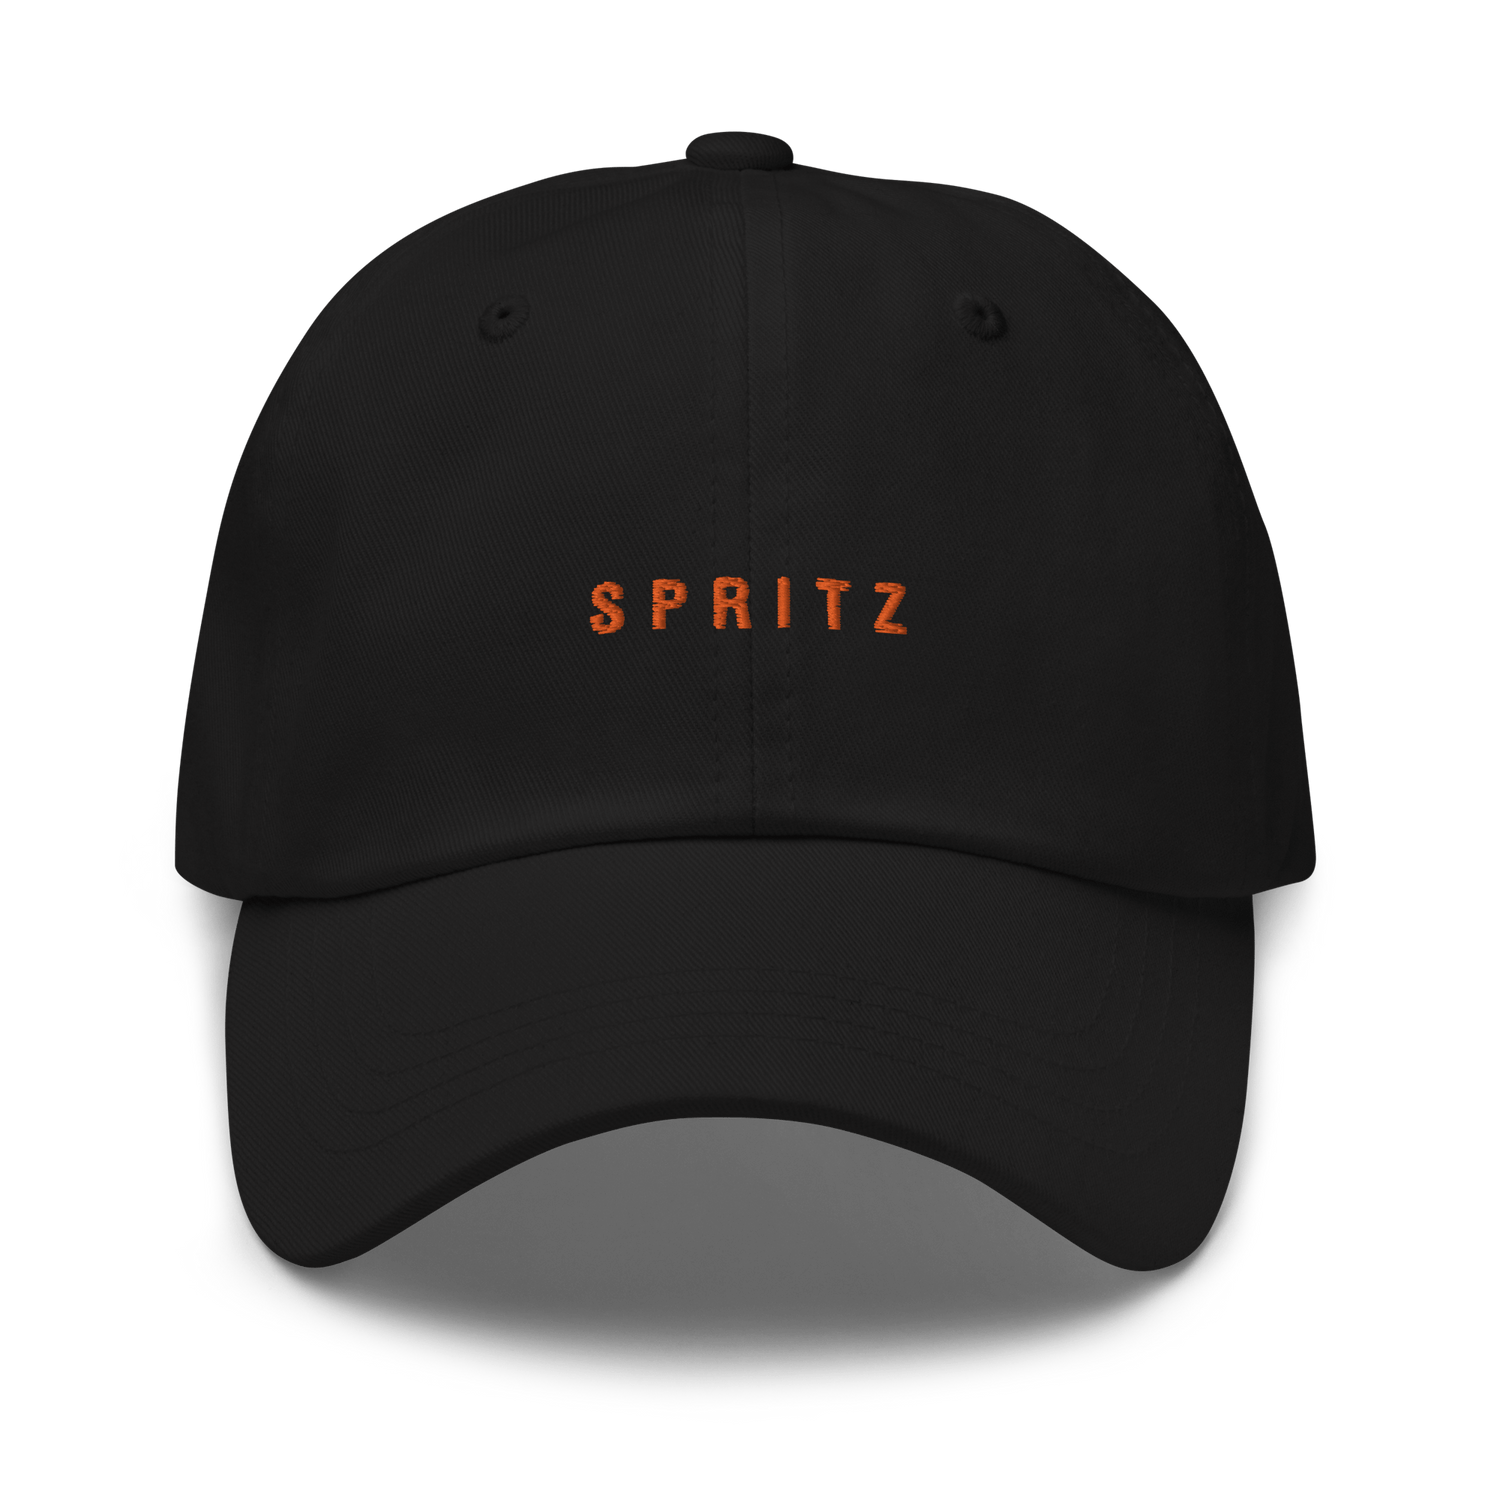 The Spritz Cap